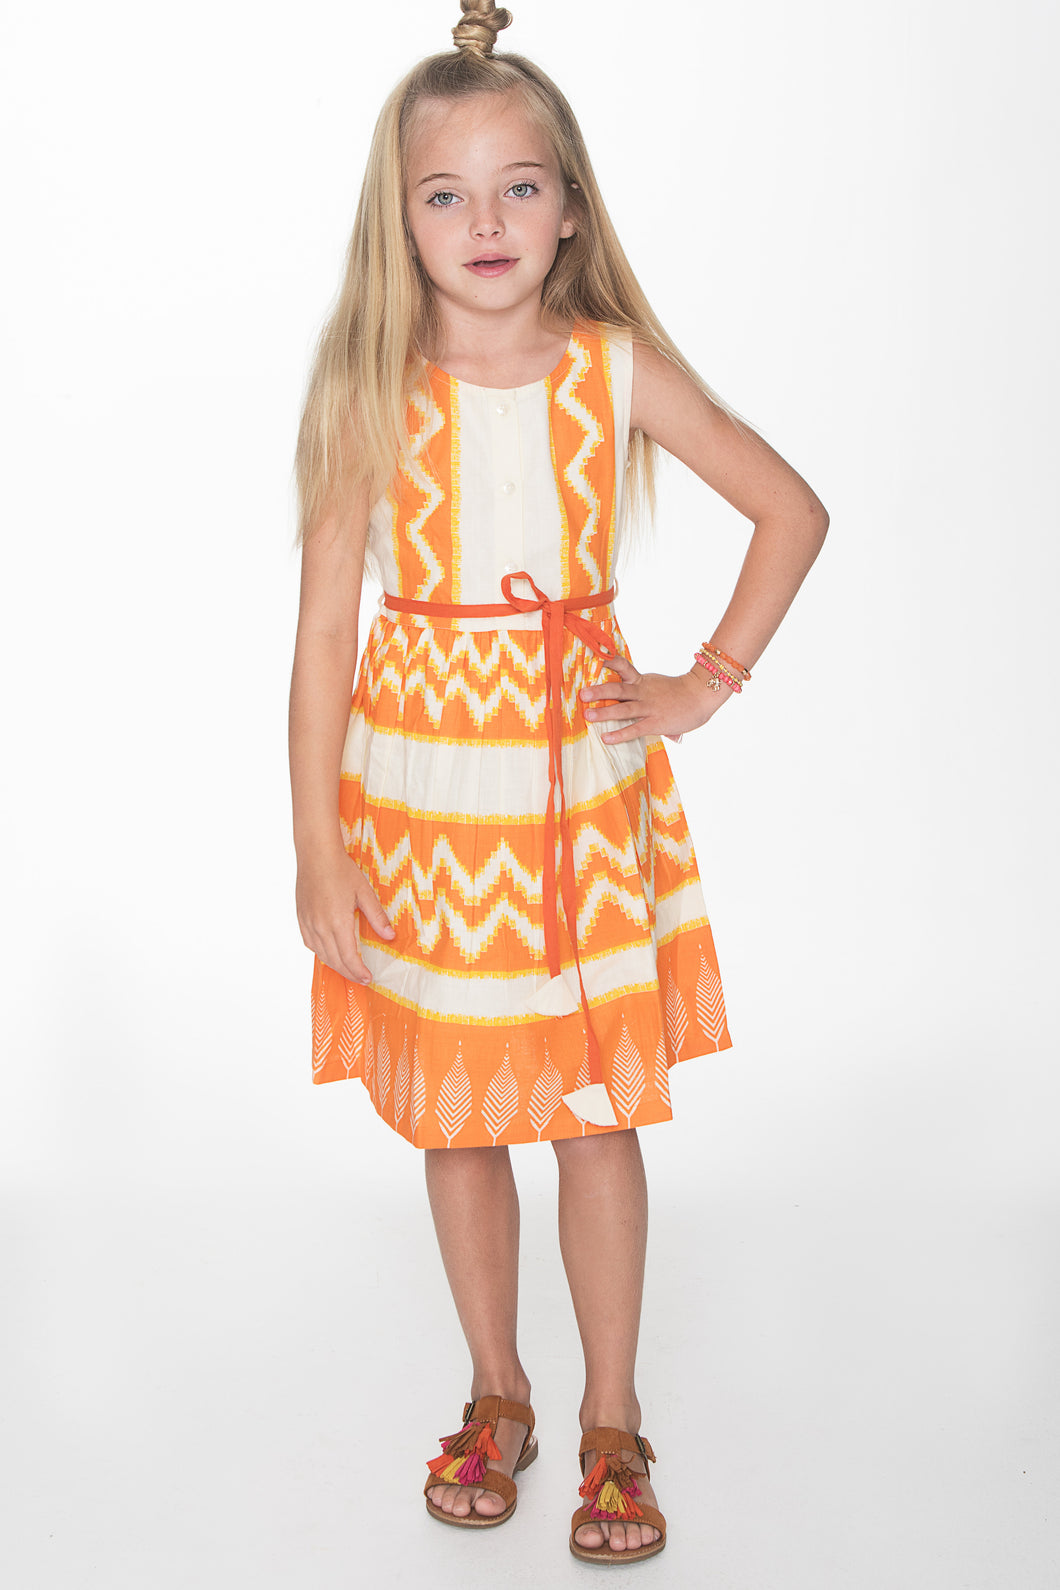 Orange Off-White Tribal Print Dress - Kids Wholesale Boutique Clothing, Dress - Girls Dresses, Yo Baby Wholesale - Yo Baby